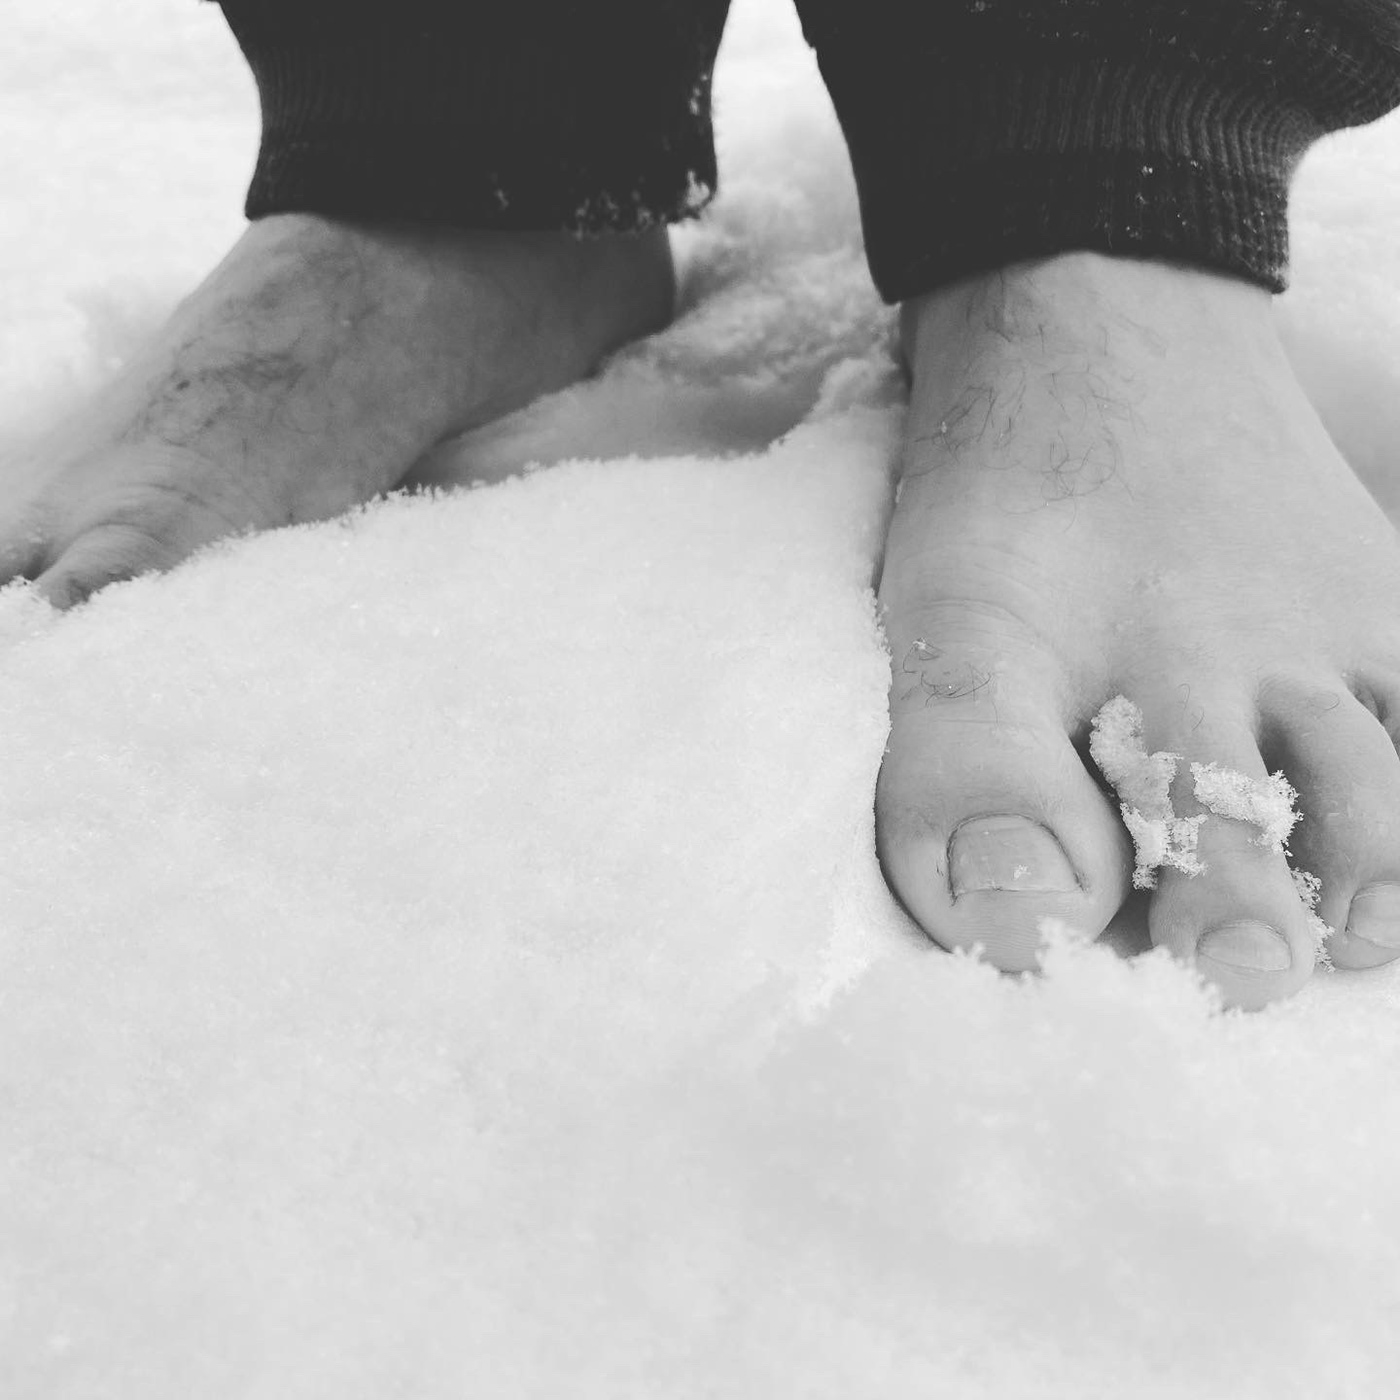 snow barefoot winter monochrome Schweiz Switzerland schnee